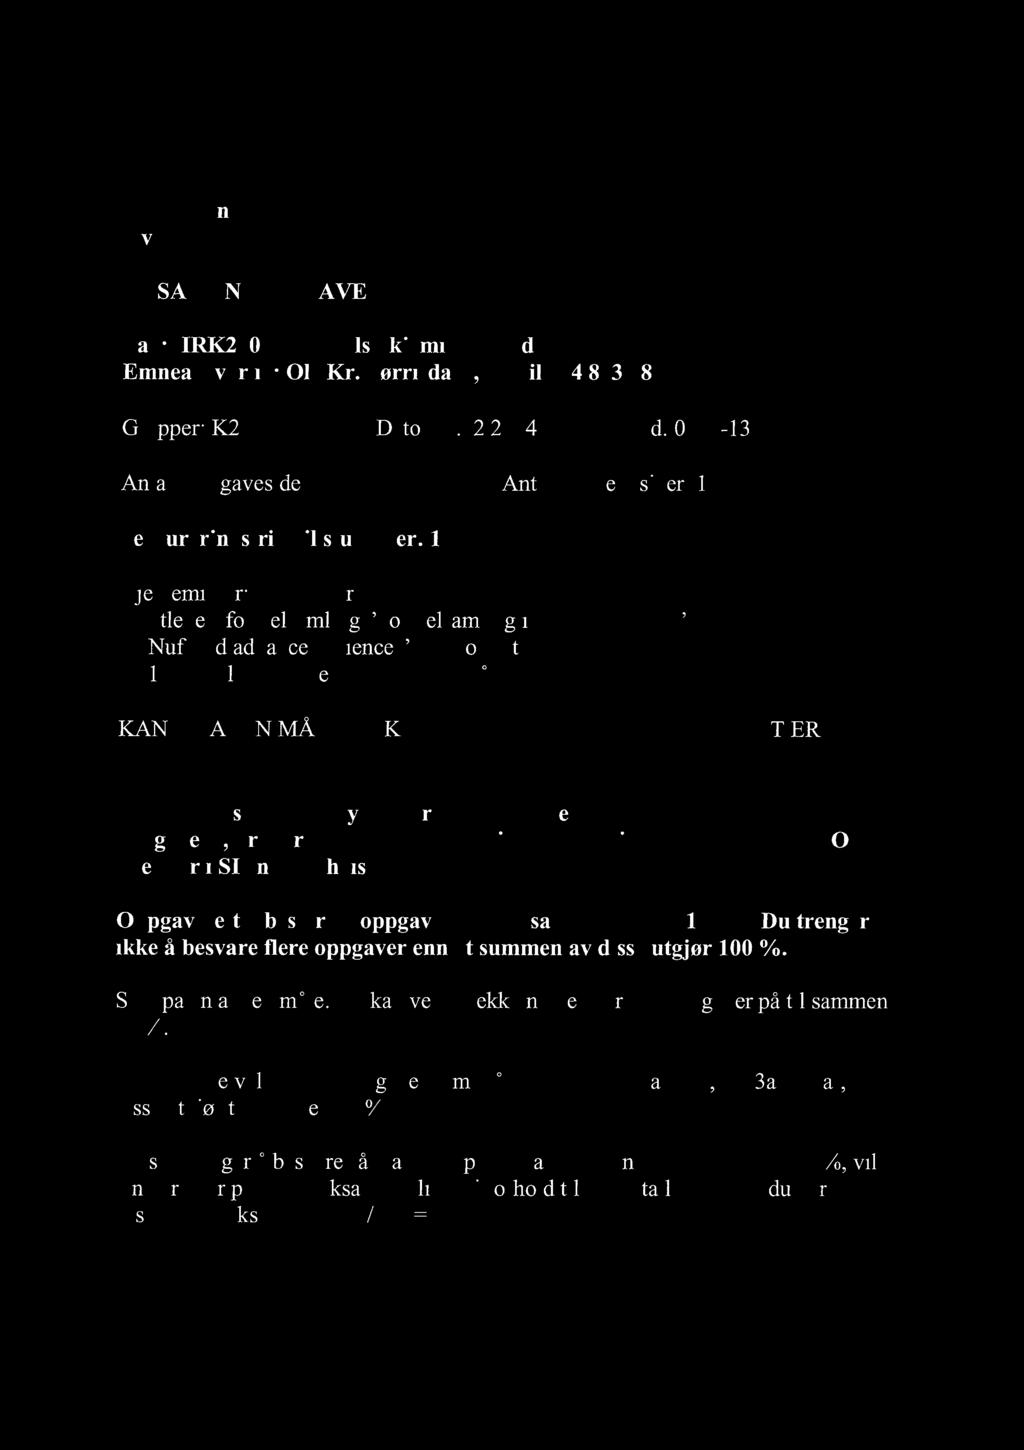 01.15 Hjelpemidler: Kalkulator, utlevert formelsamling "Formelsamling i fysikalsk kjemi", Nuffleld advanced science "Book of data".